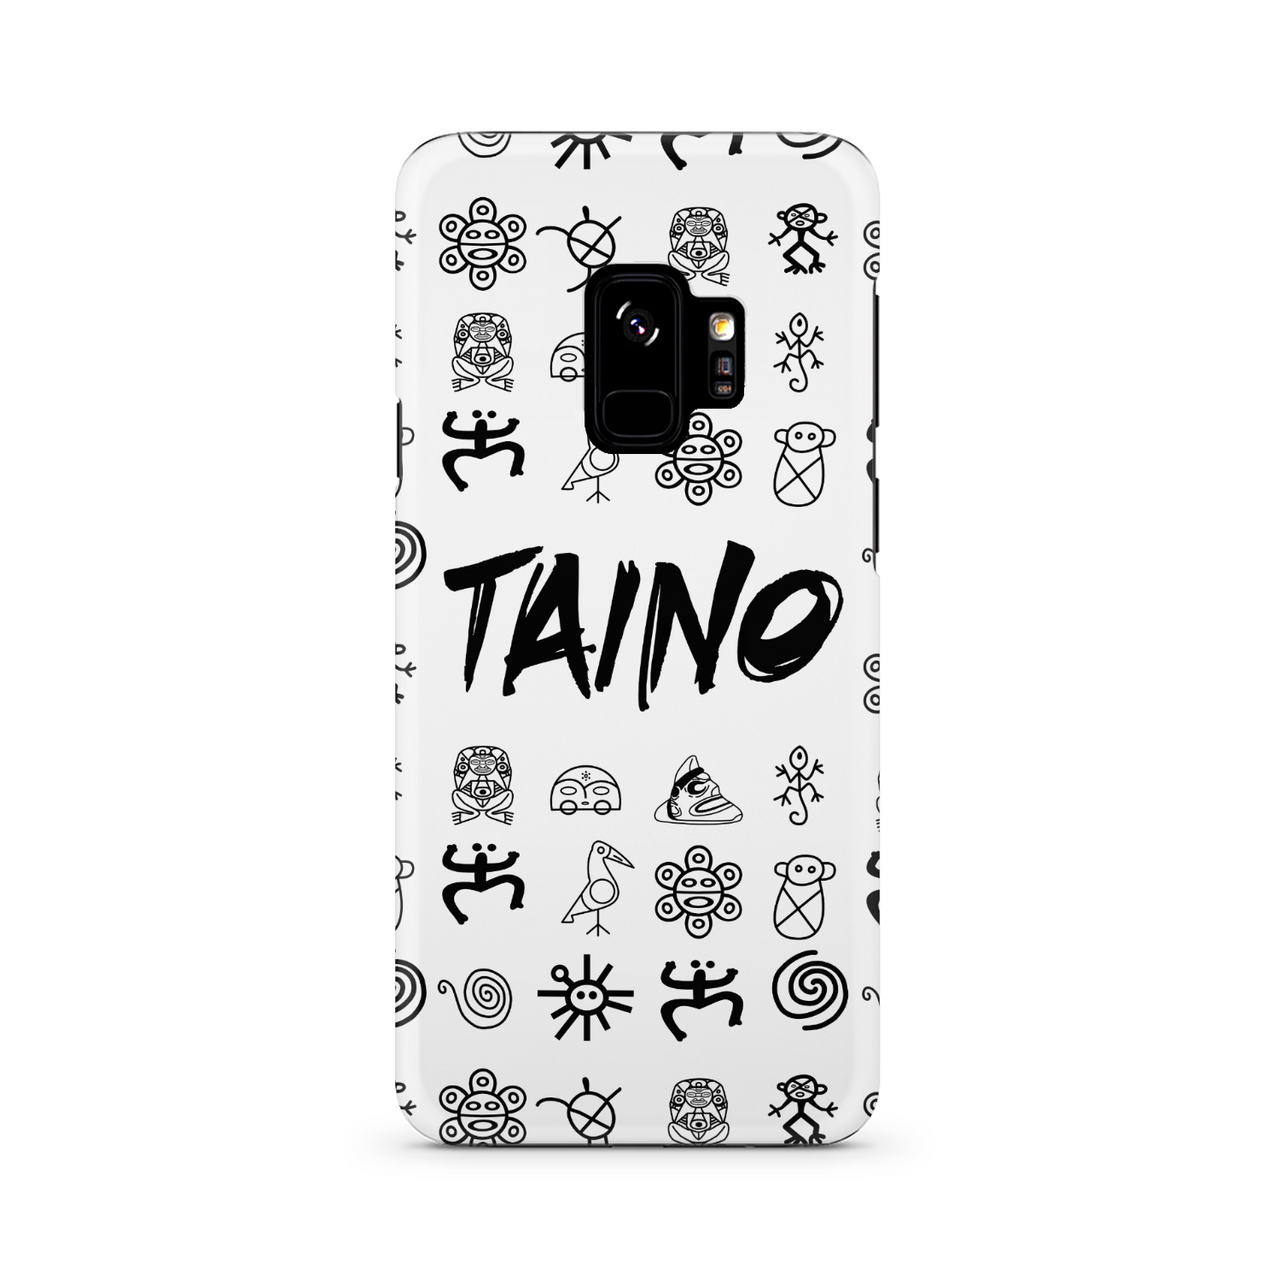 TAINO SYMBOLS Phone Wallet / case – Puerto Rican Pride